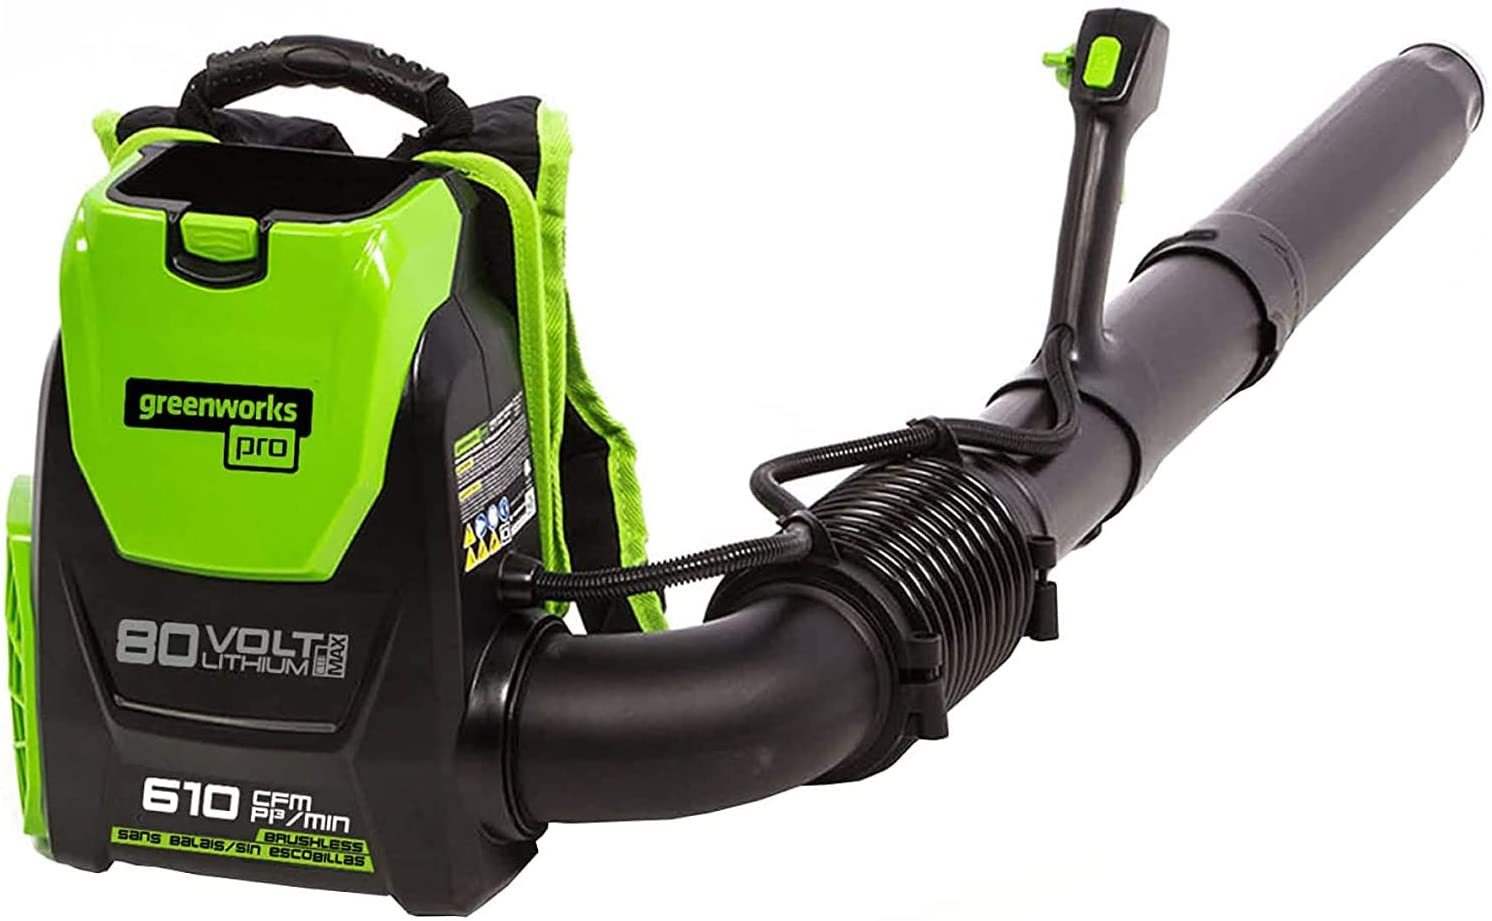 Greenworks Pro 80V (180 MPH / 610 CFM) Brushless Cordless Backpack Leaf Blower, - $259.99